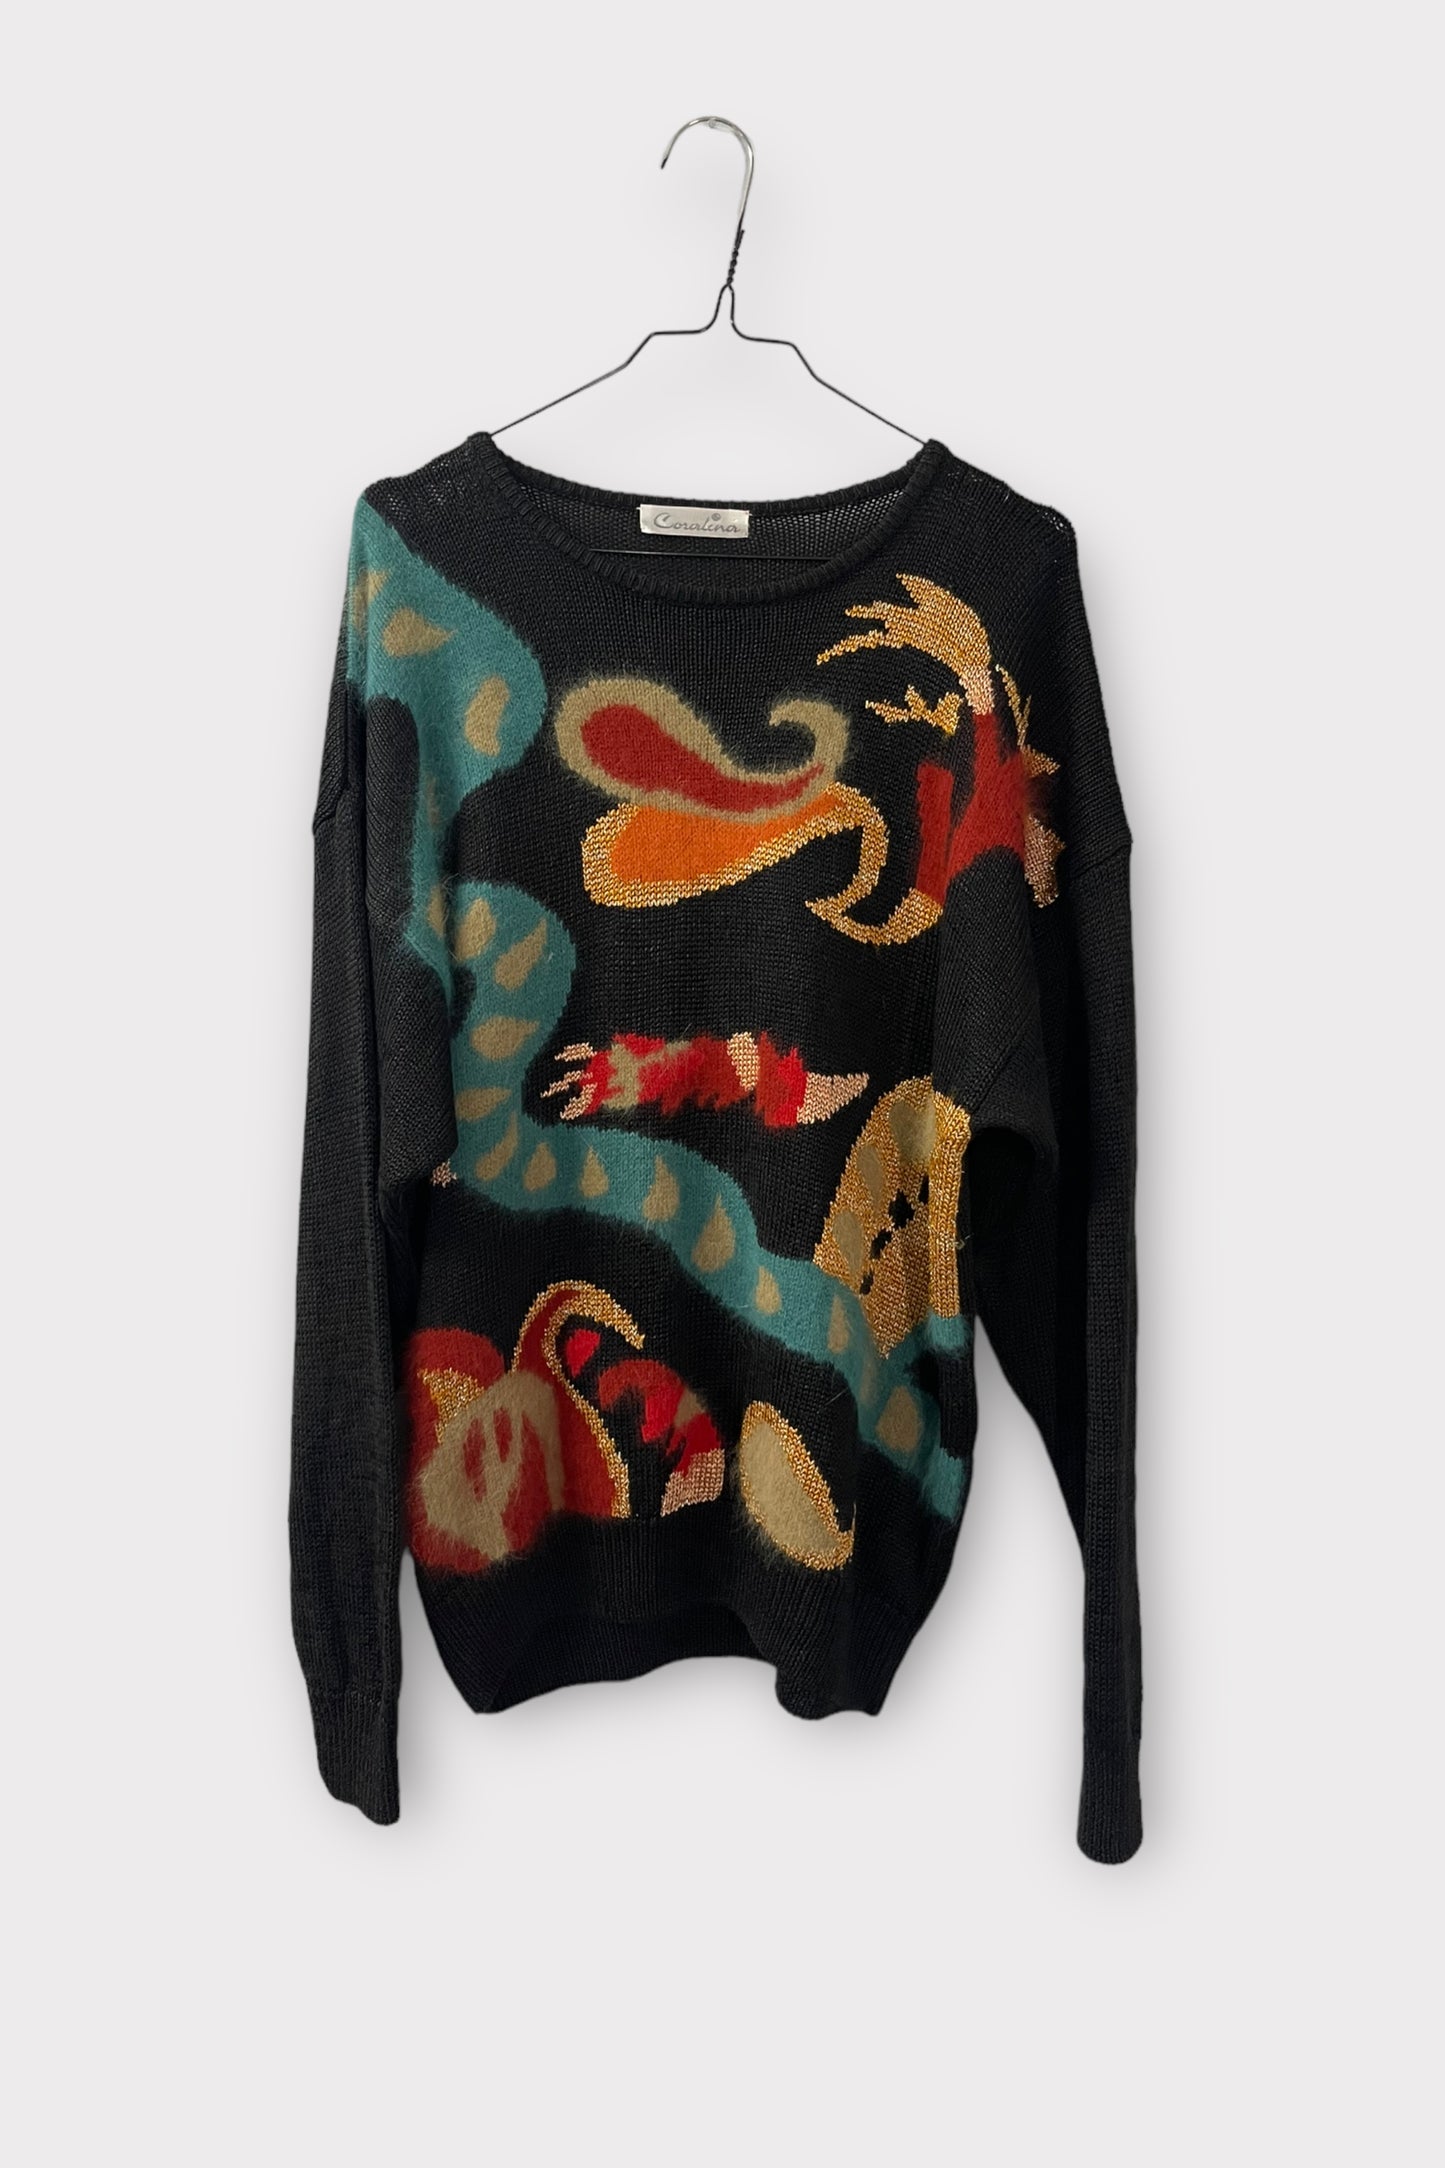 lilou angora sweater - L